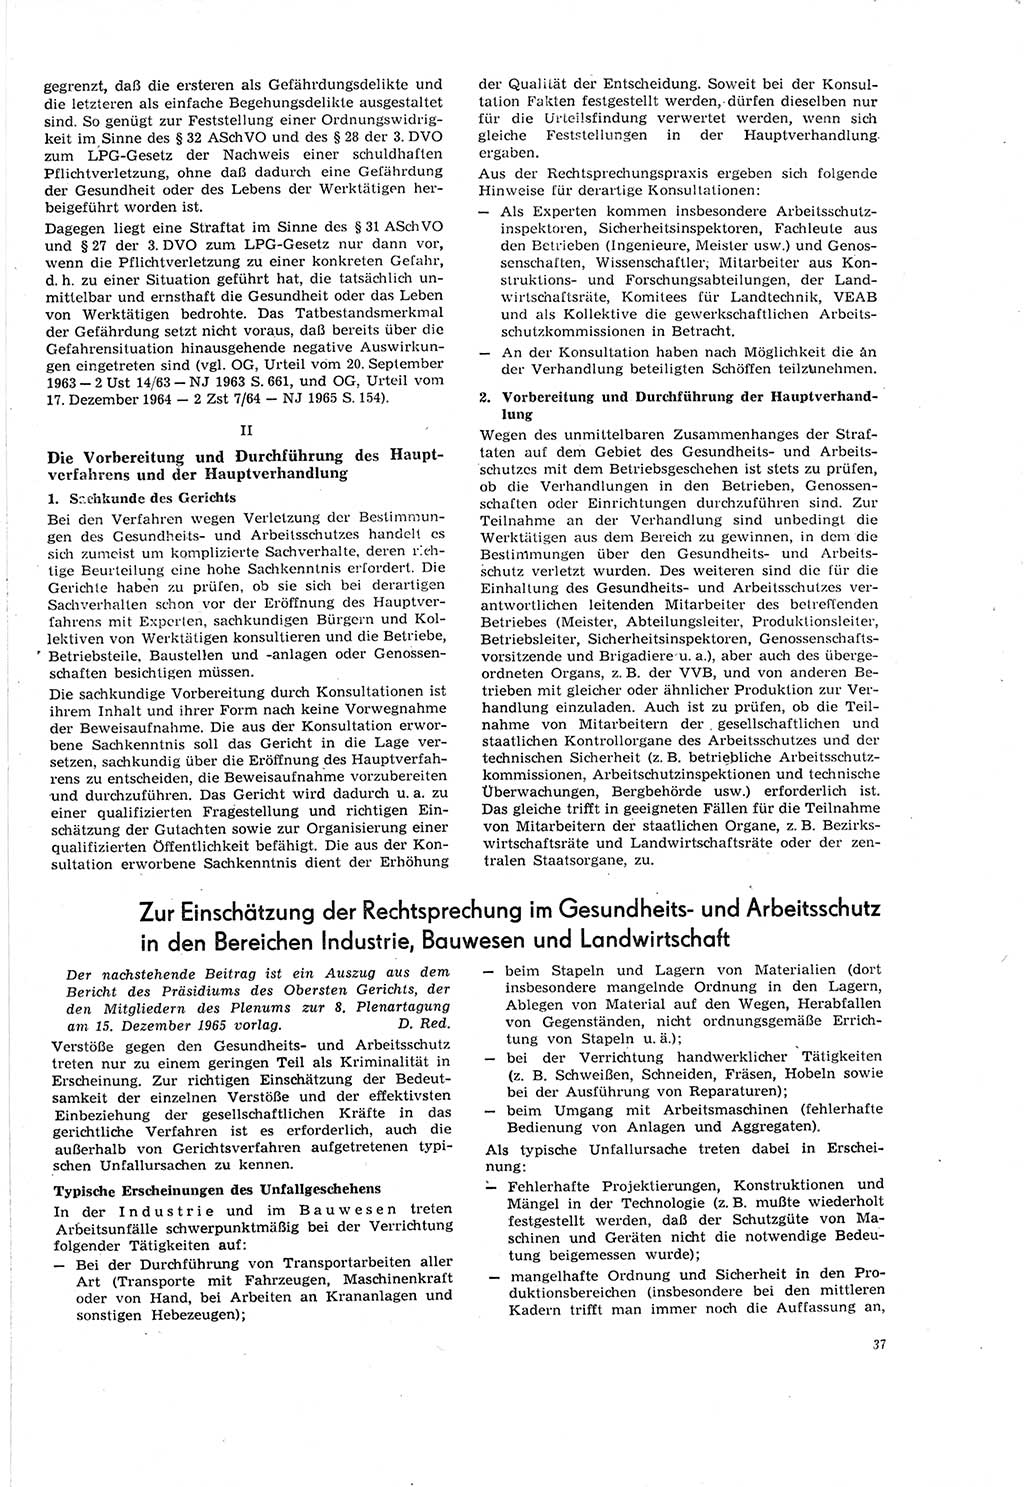 Neue Justiz (NJ), Zeitschrift für Recht und Rechtswissenschaft [Deutsche Demokratische Republik (DDR)], 20. Jahrgang 1966, Seite 37 (NJ DDR 1966, S. 37)